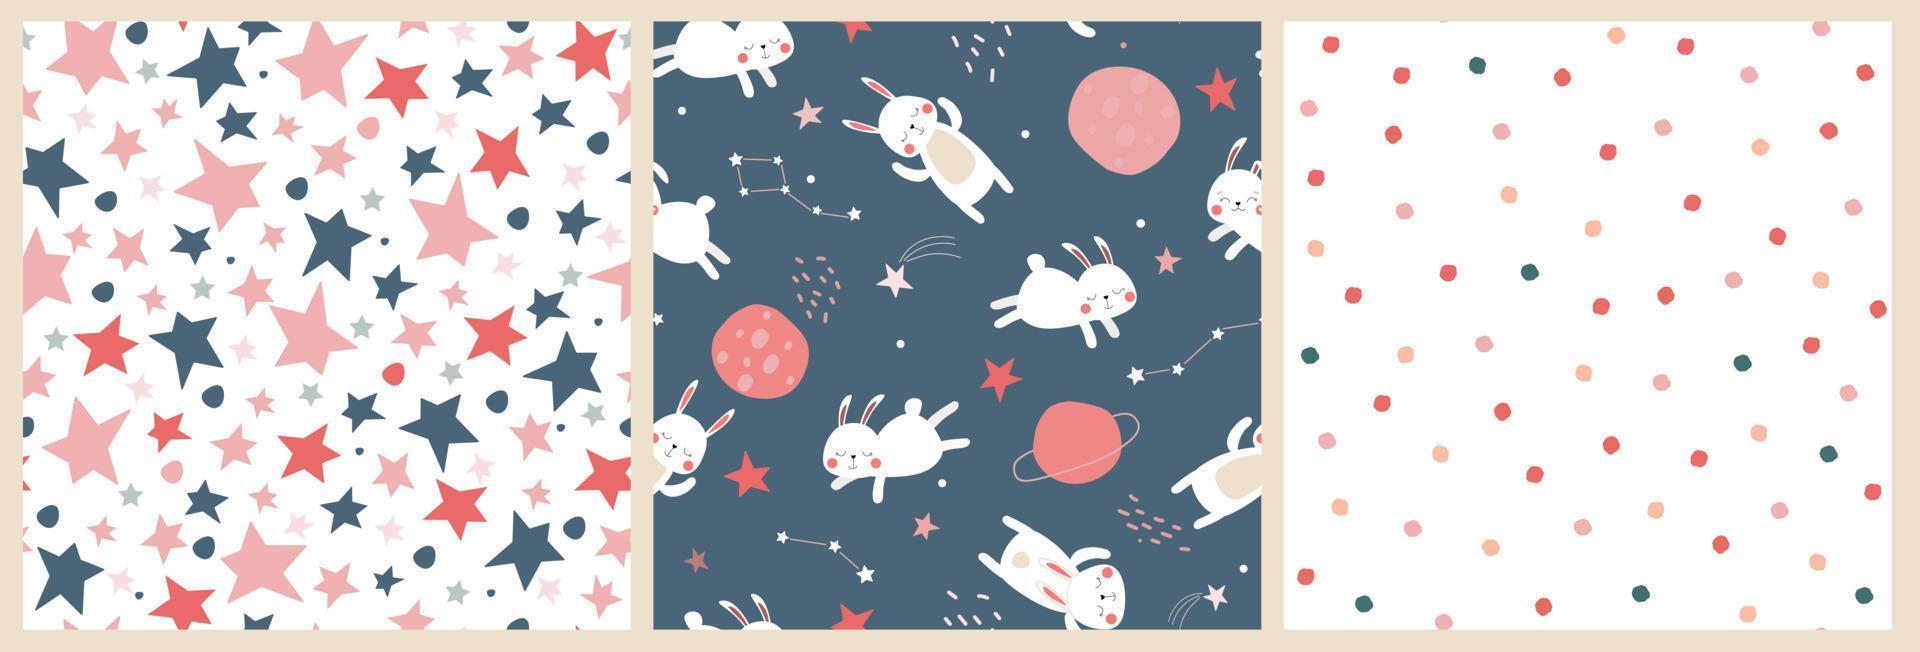 en uppsättning sömlösa mönster med ett sött babytryck med harar i rymden. sovande kaniner flyger på himlen med stjärnor och planeter. vektorgrafik. vektor